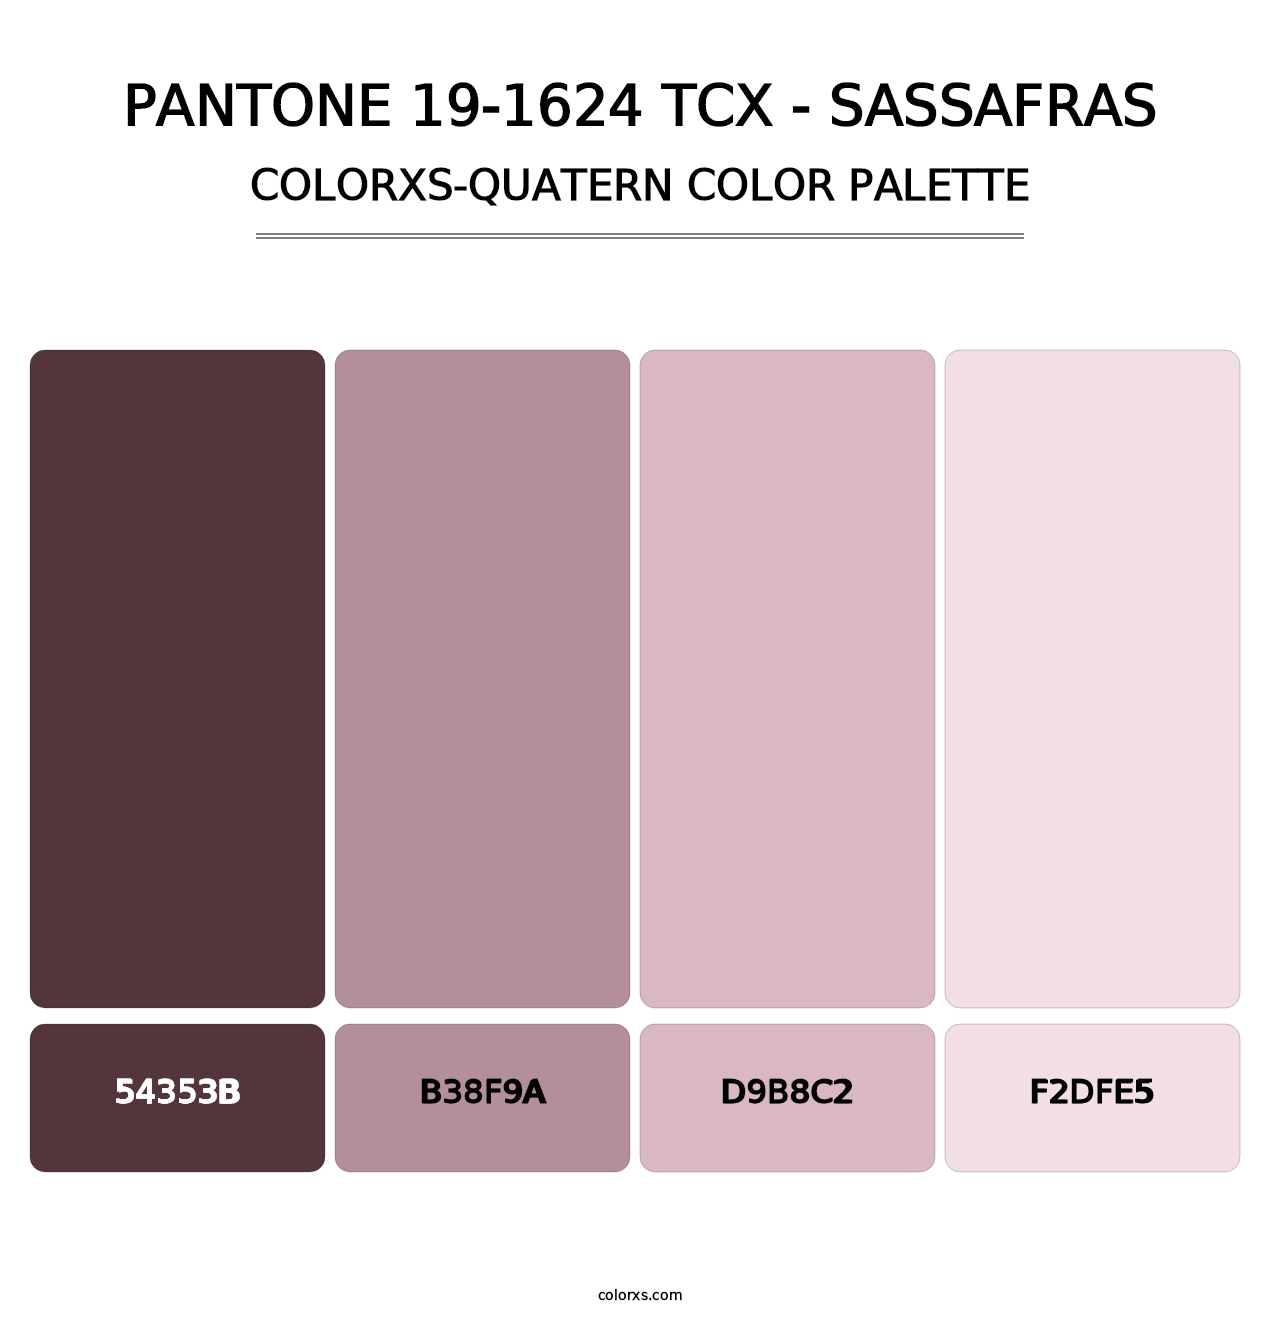 PANTONE 19-1624 TCX - Sassafras - Colorxs Quatern Palette